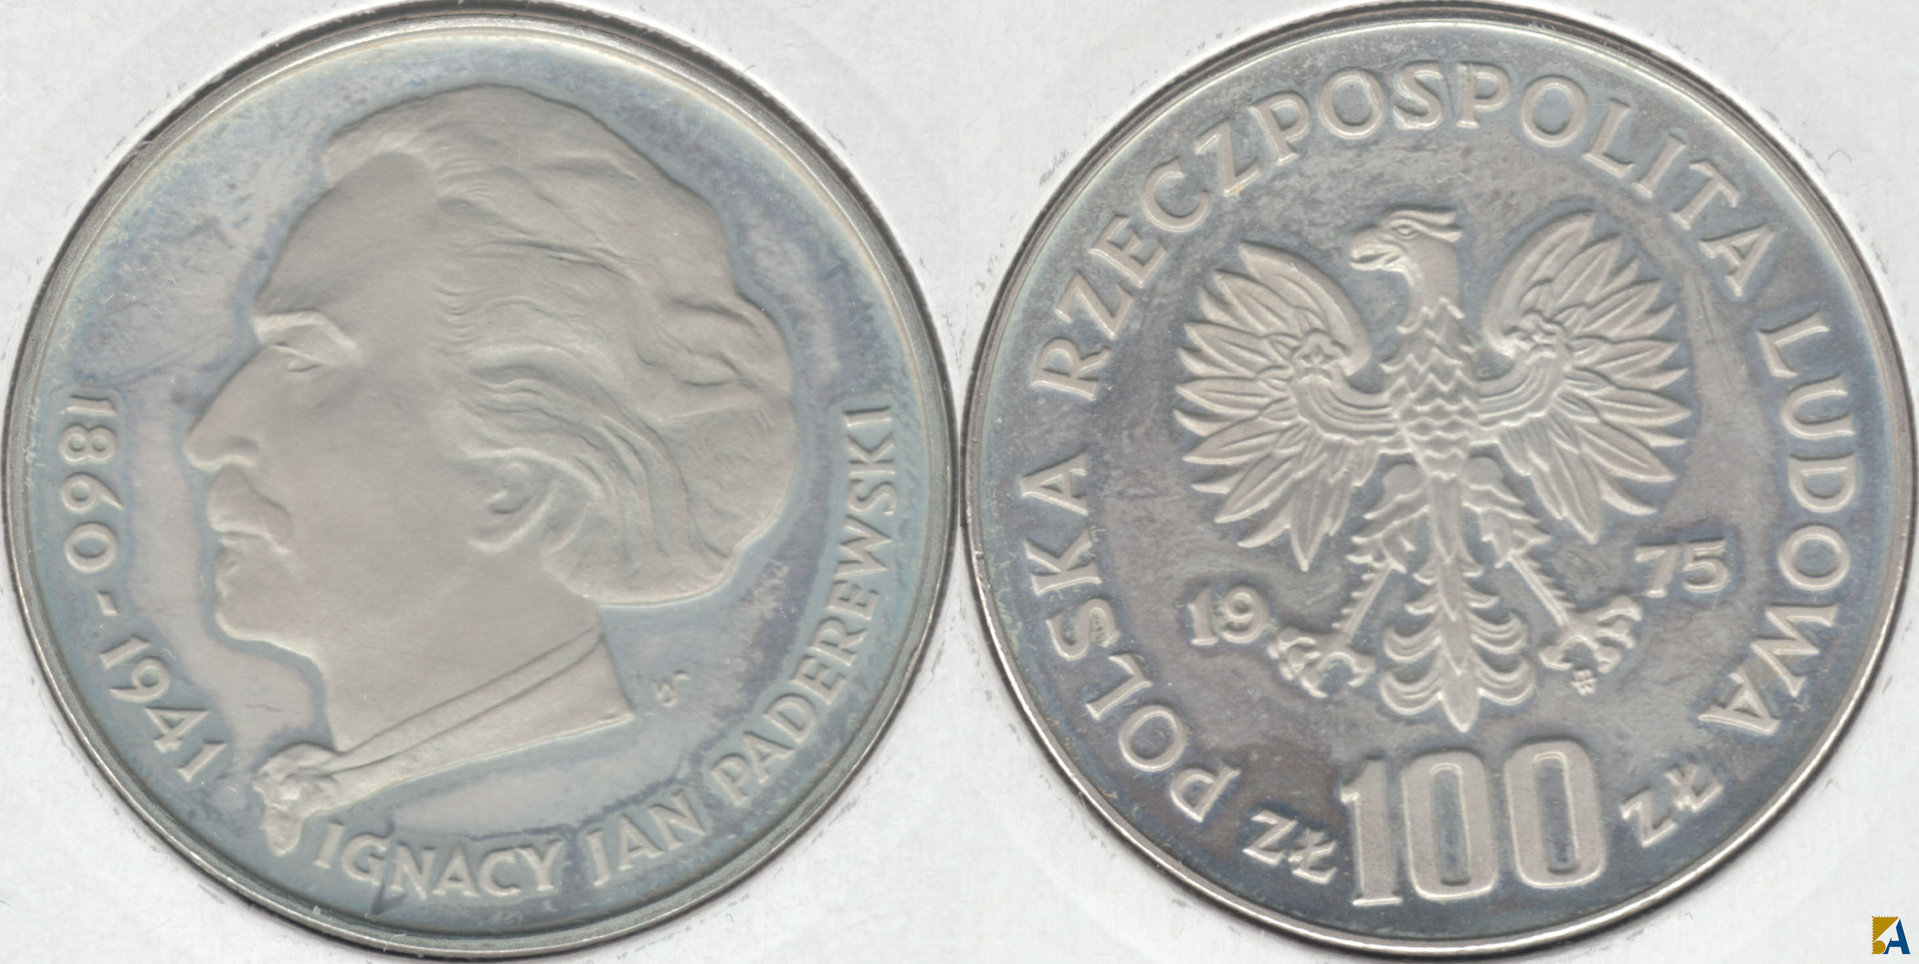 POLONIA - POLSKA. 100 ZLOTYCH DE 1975. PLATA 0.625. (5)